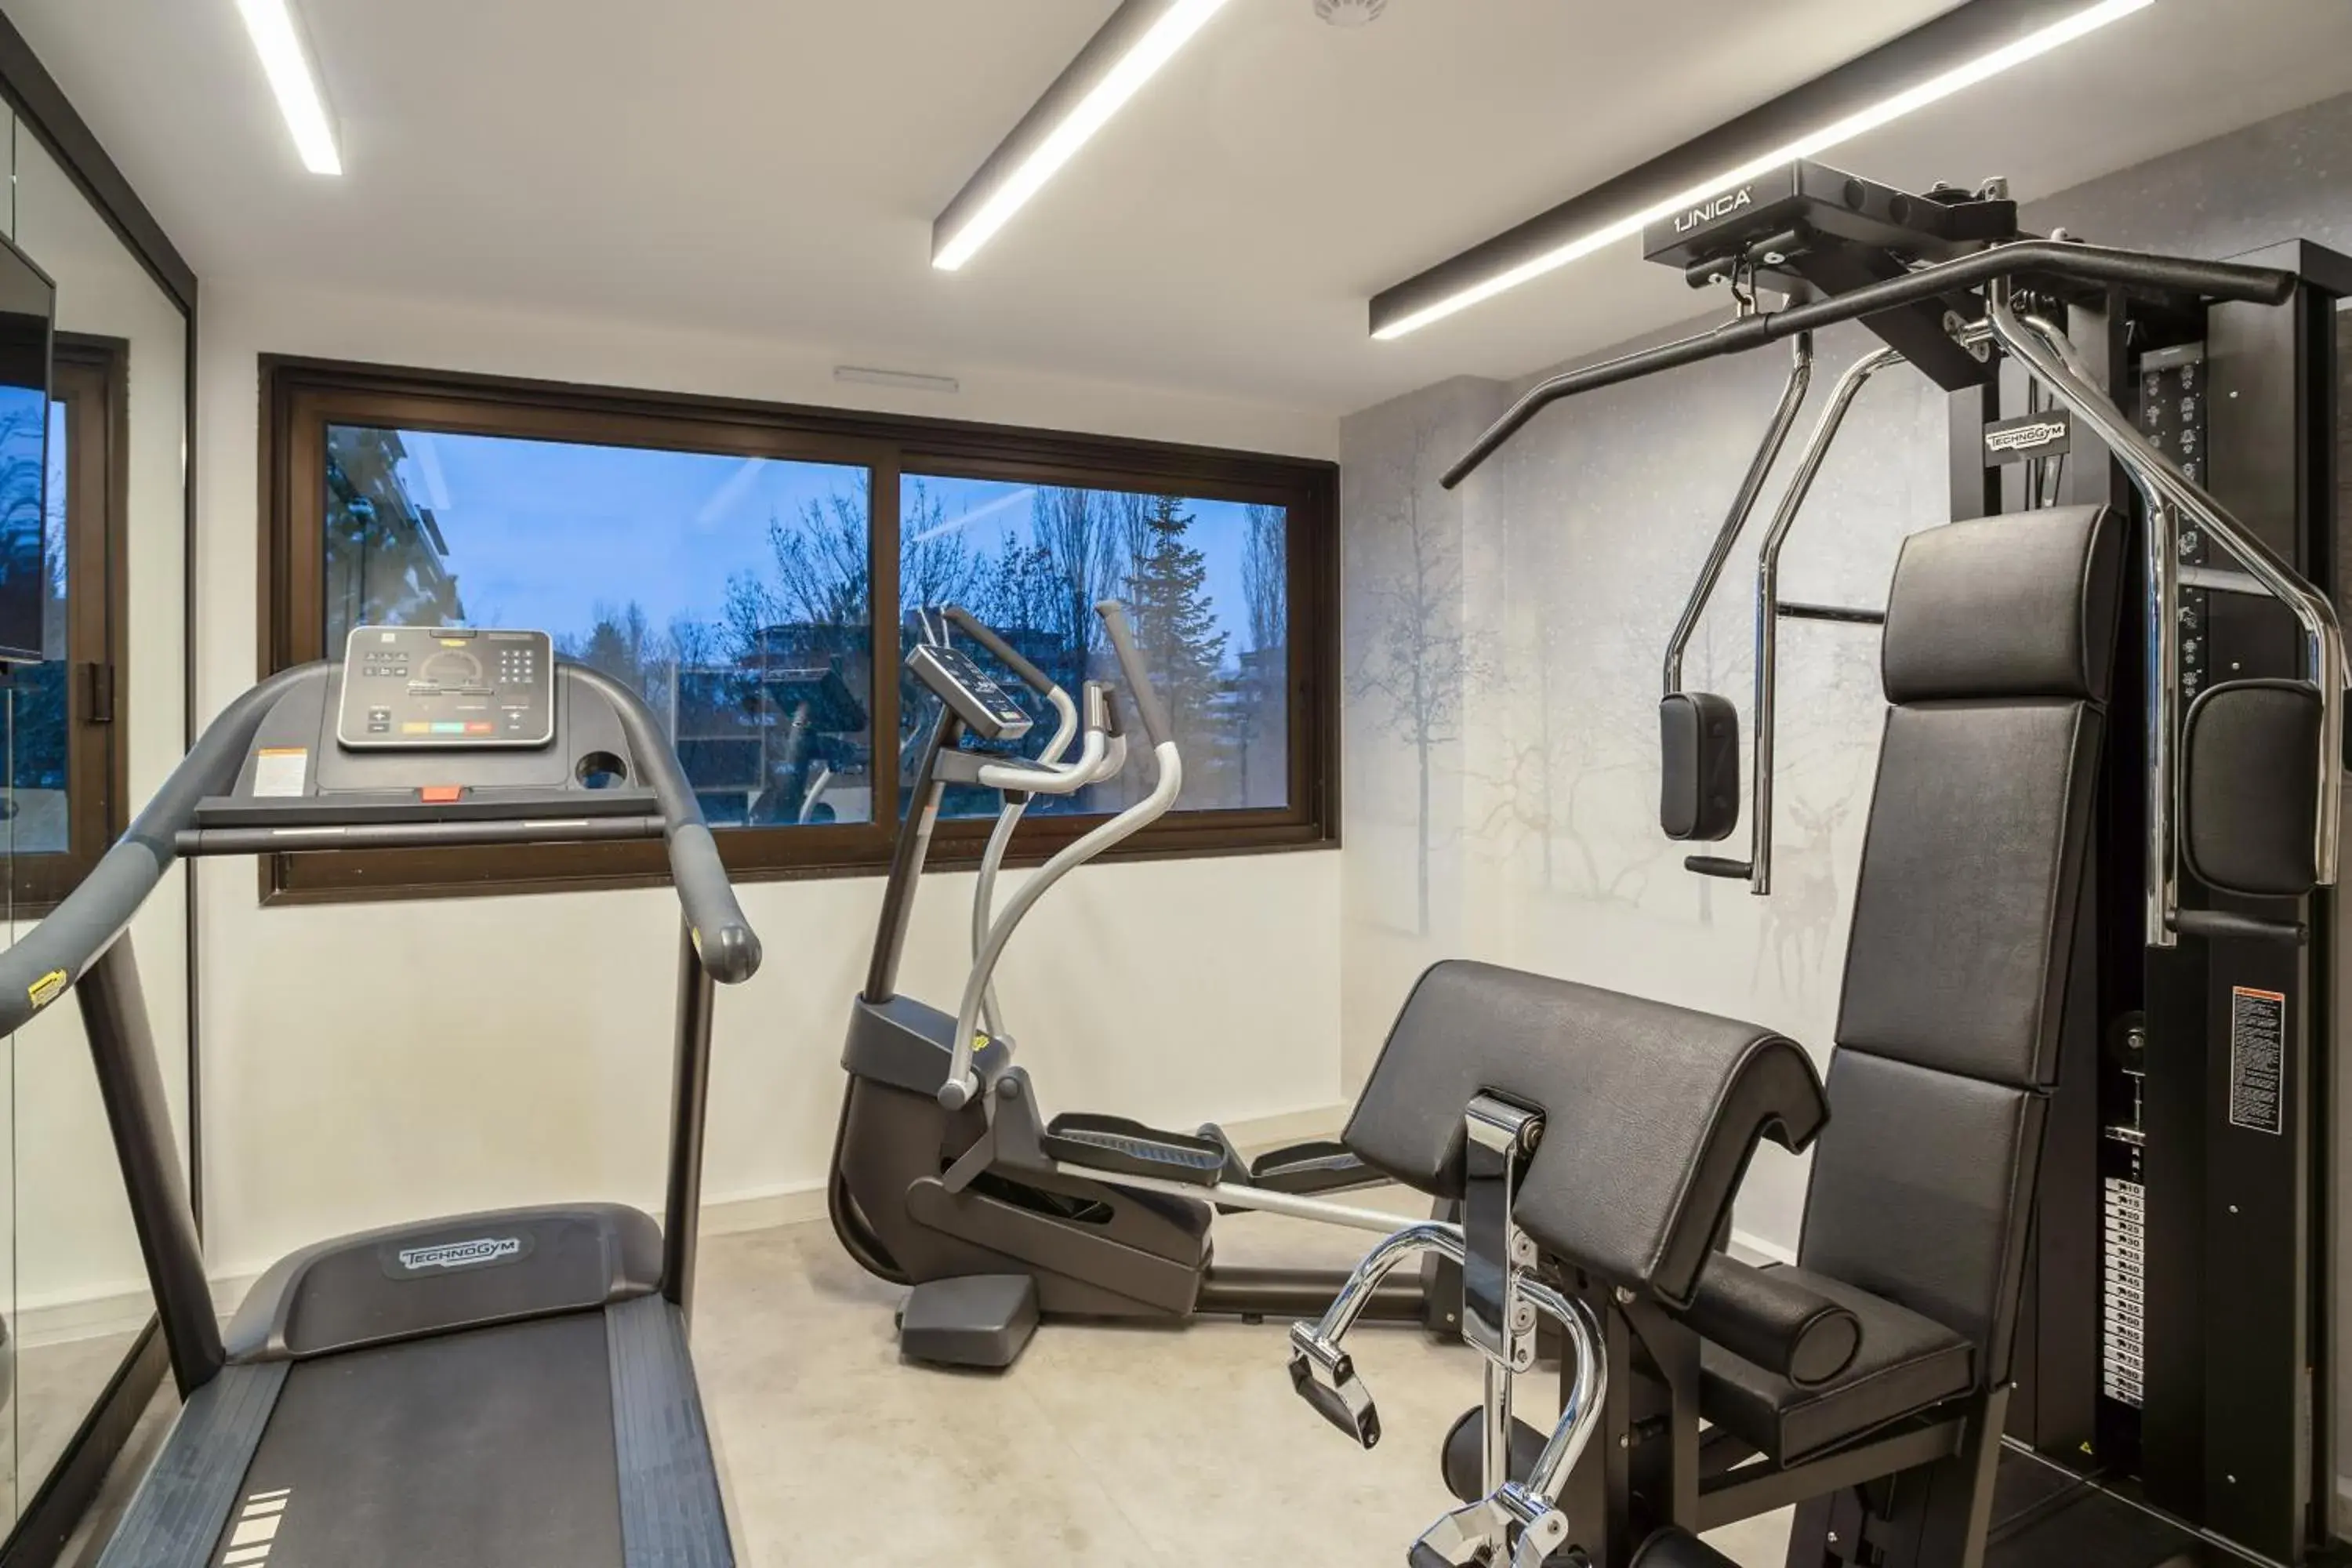 Fitness centre/facilities, Fitness Center/Facilities in Park & Suites Elégance Genève-Ferney Voltaire